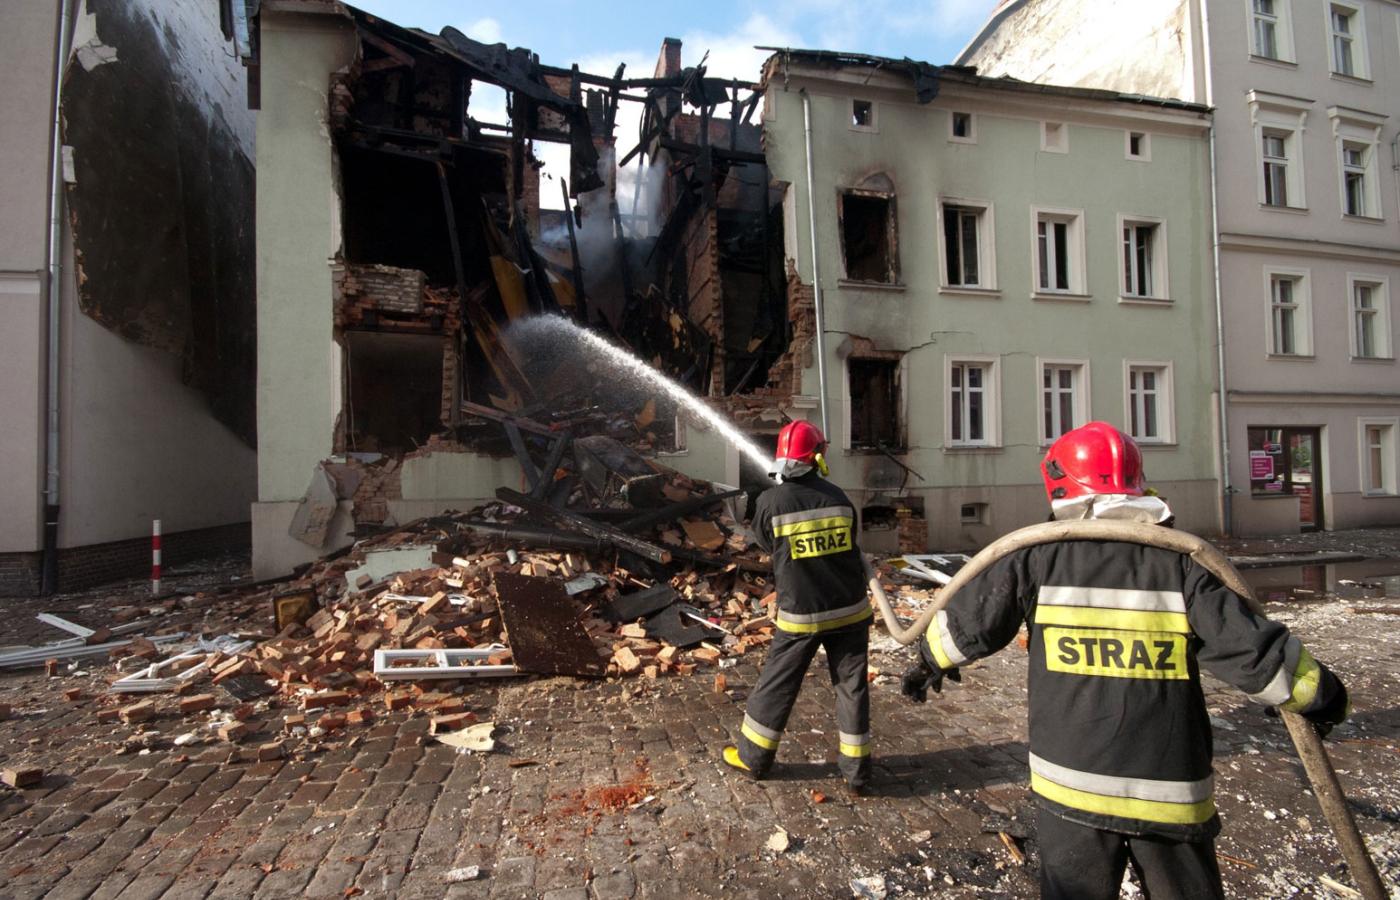 Uratowali się wszyscy mieszkańcy kamienicy przy Krasińskiego w Słupsku, 25 osób, nikt nie ucierpiał – cud, mówili nawet strażacy.